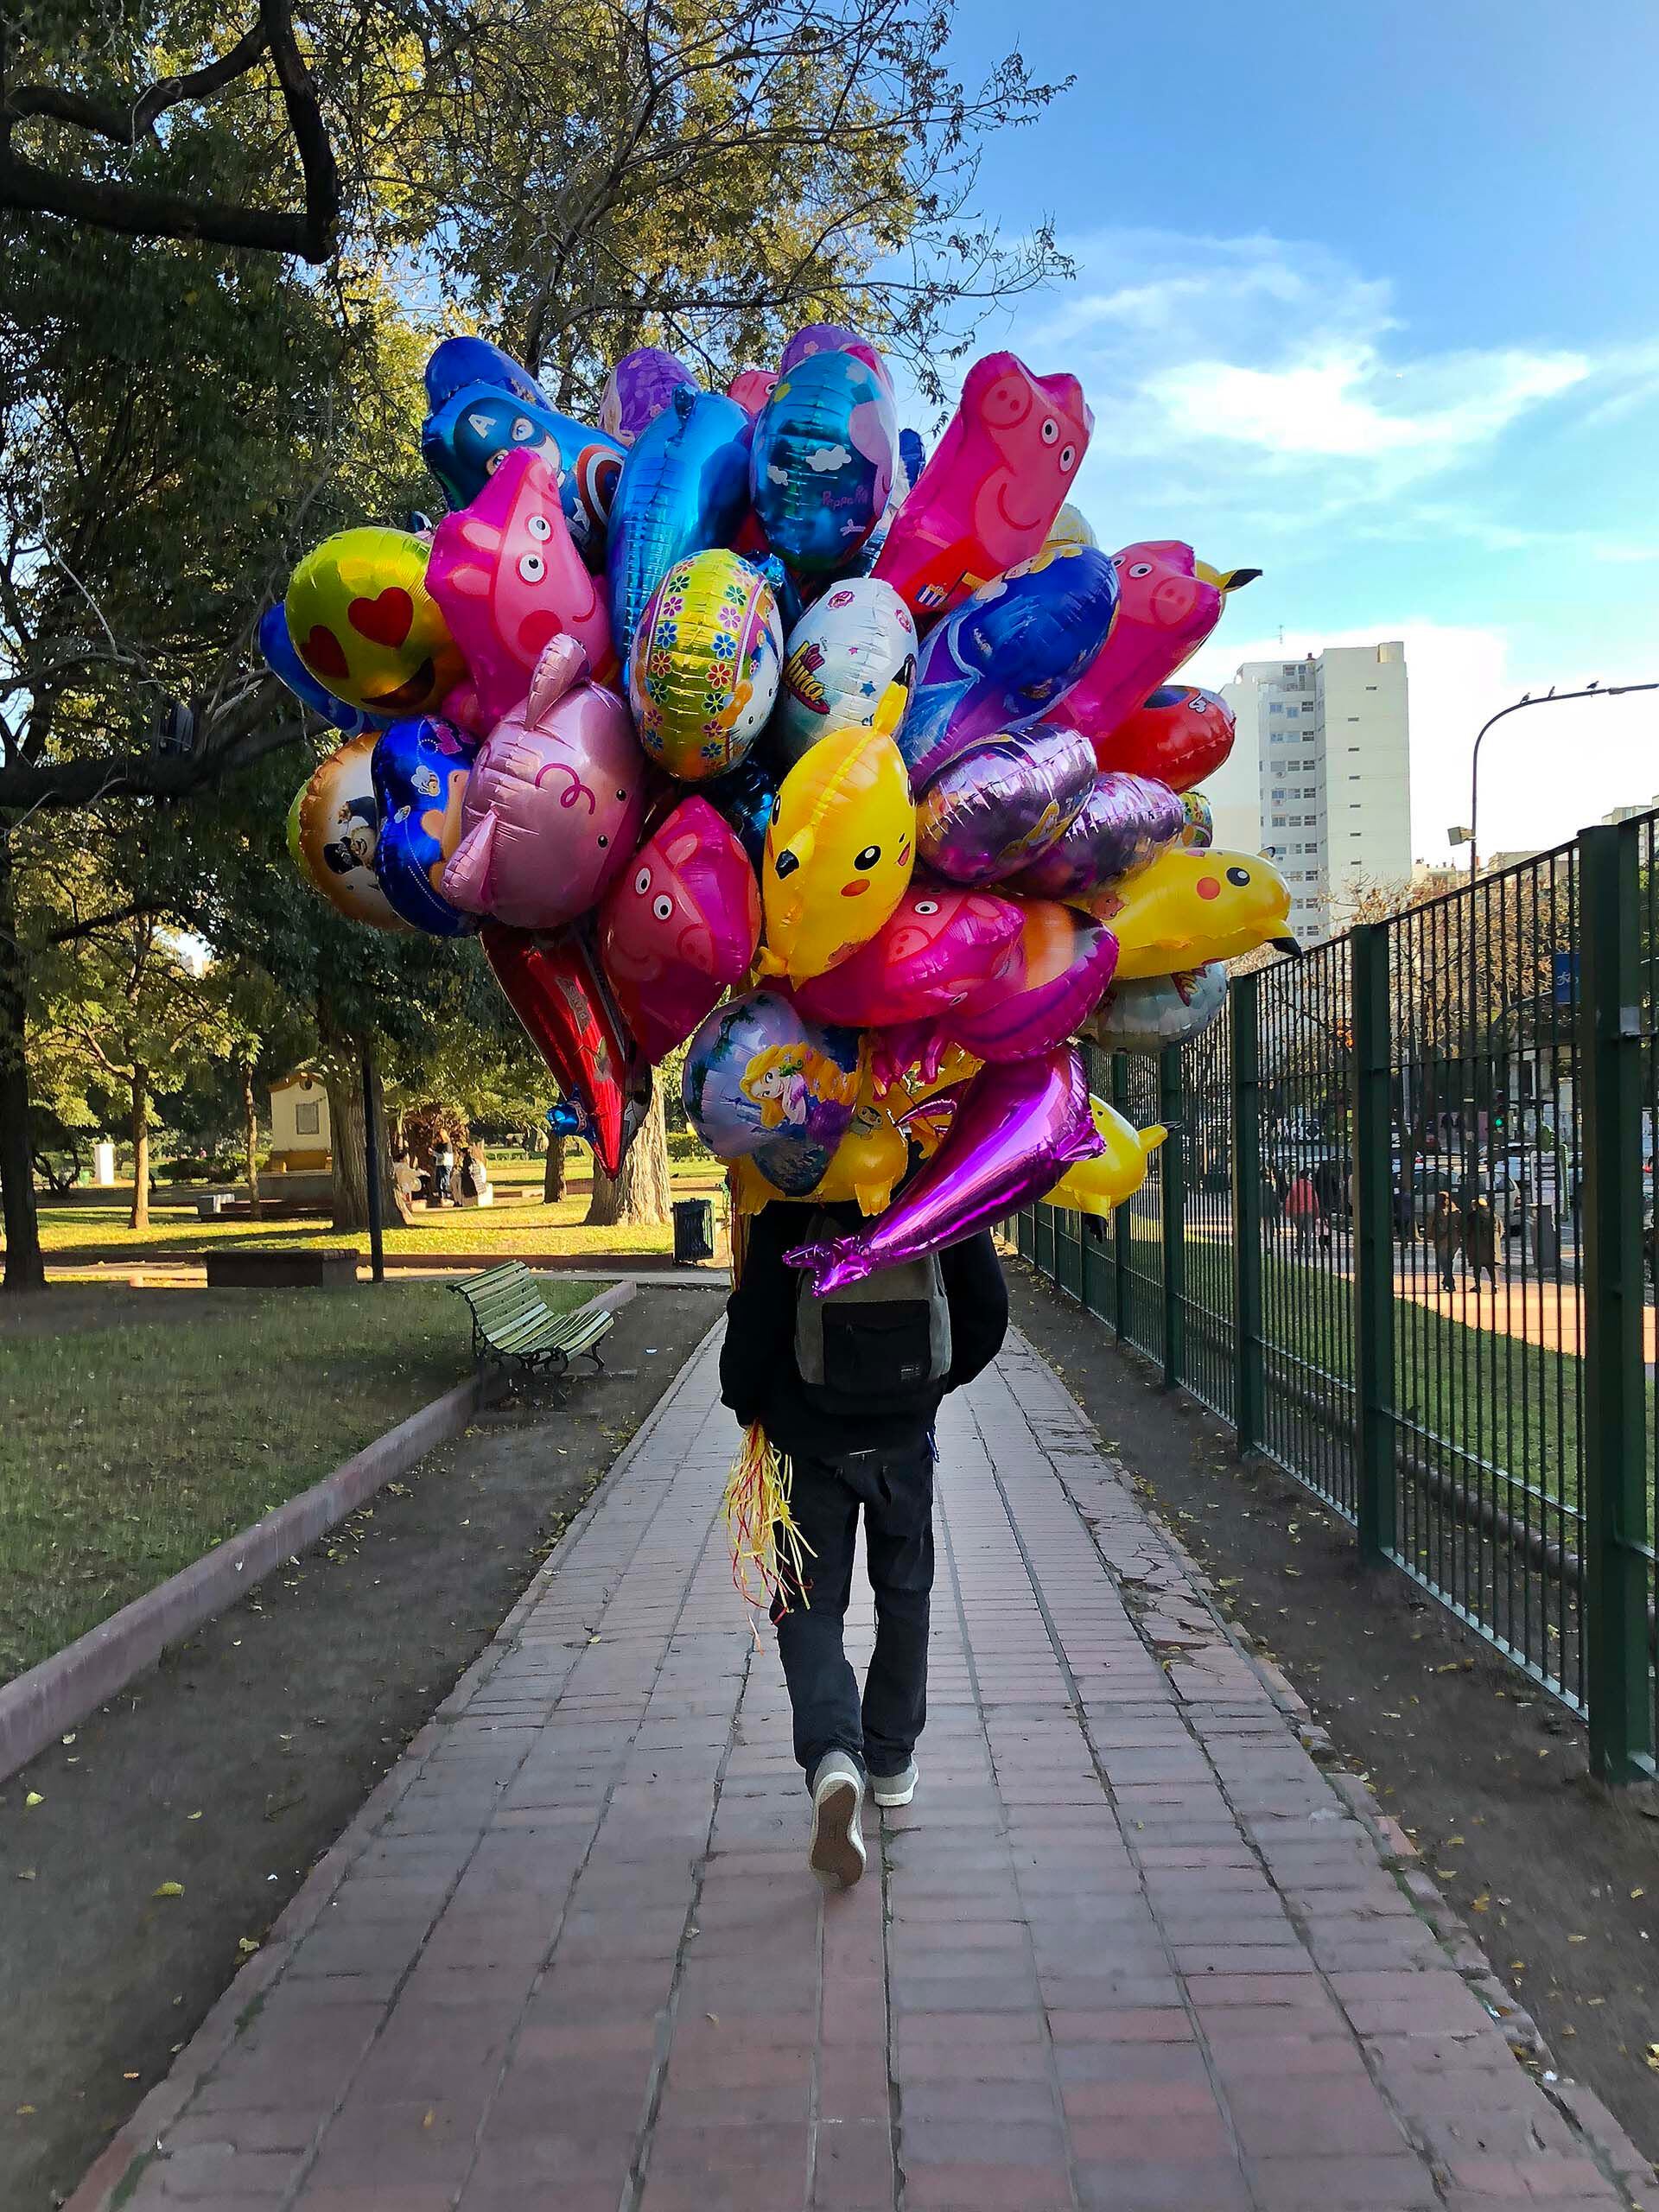 El vendedor de globos en Parque Rivadavia: "Le saqué la foto, lo perseguí por casi una cuadra porque parecía que iba a salir volando de tantos globos"